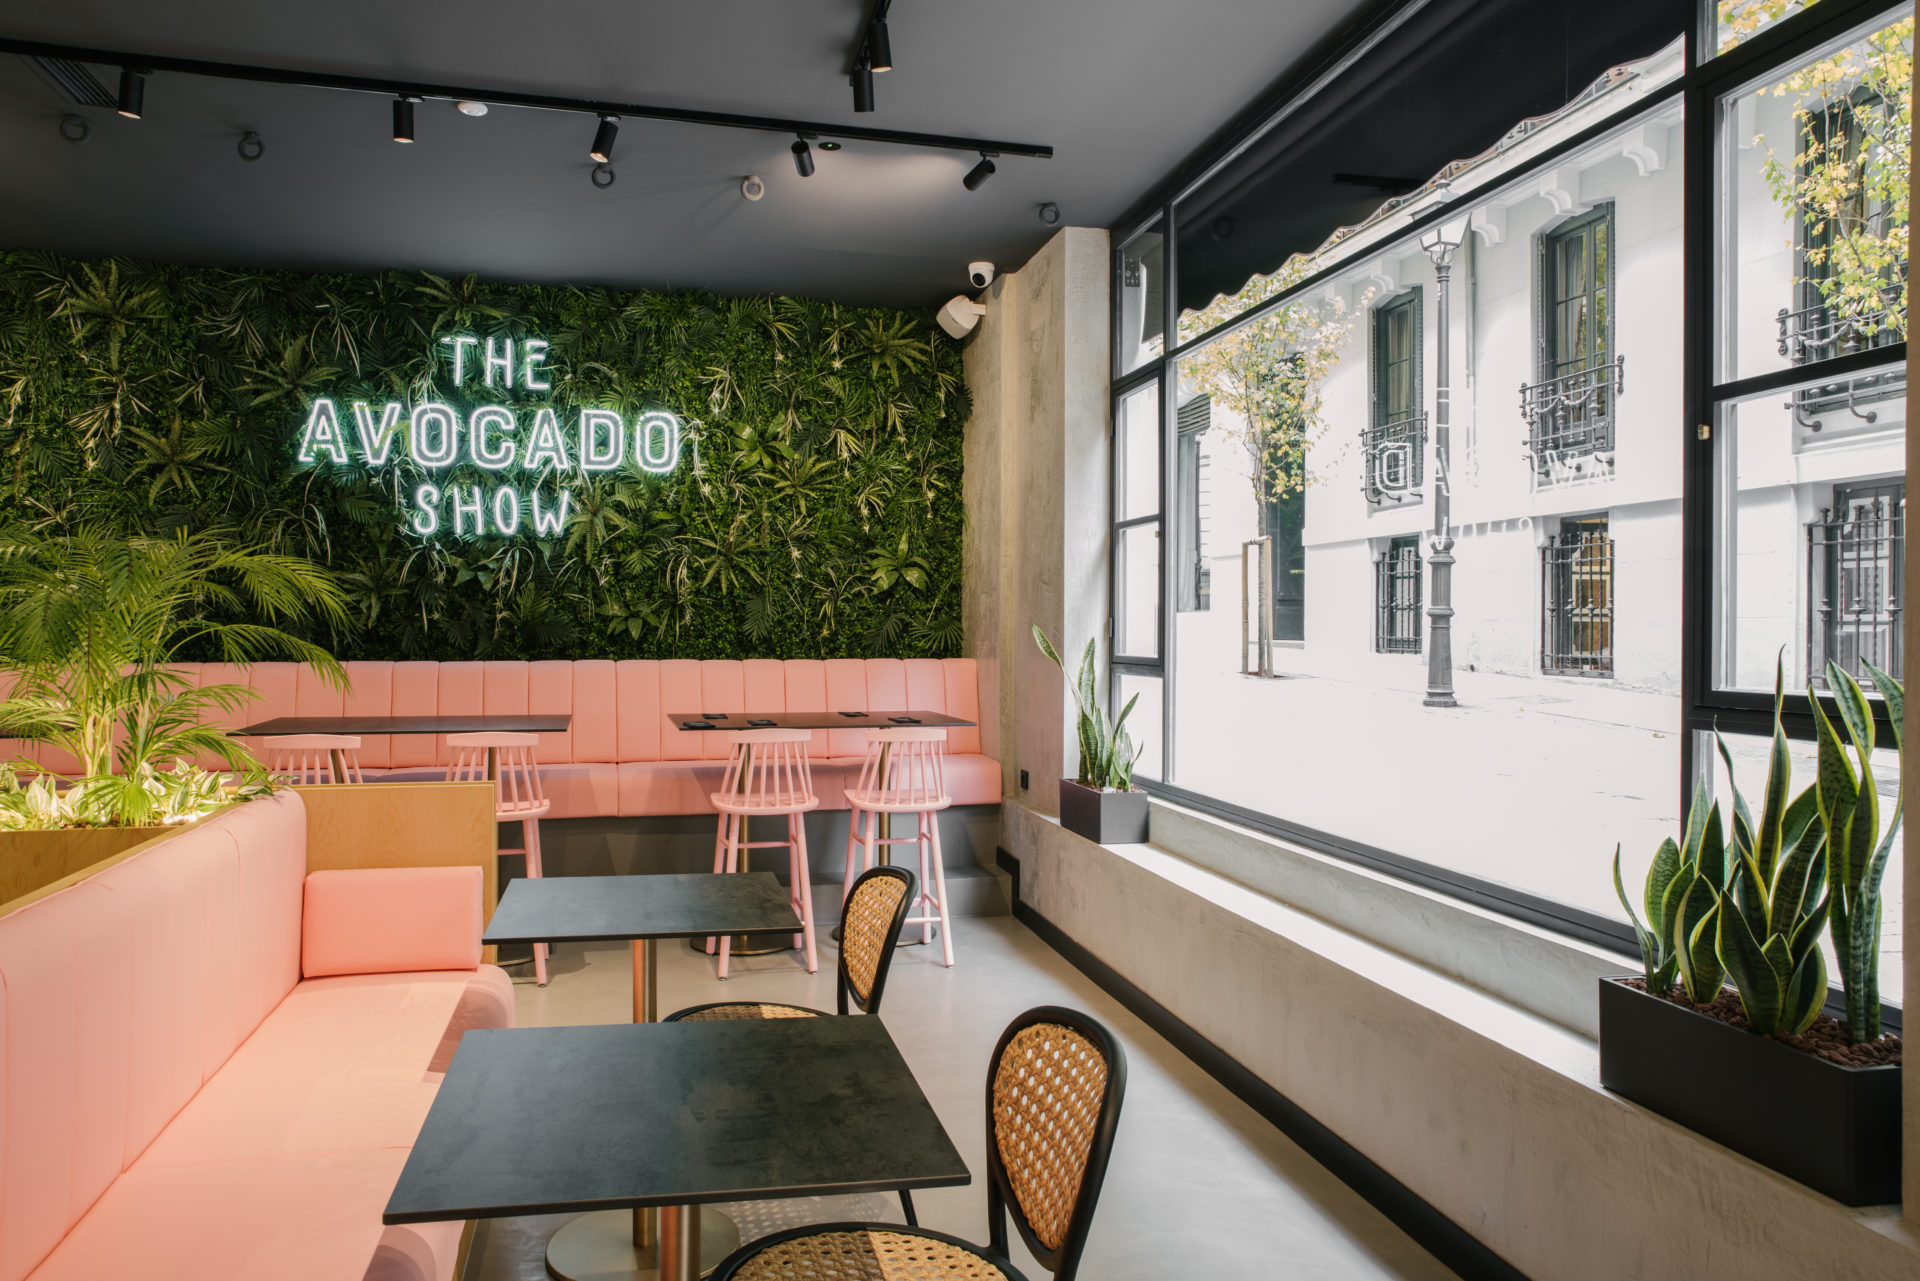 The Avocado Show desembarca en Madrid con un restaurante de 200 metros cuadrados en el barrio de Justicia.